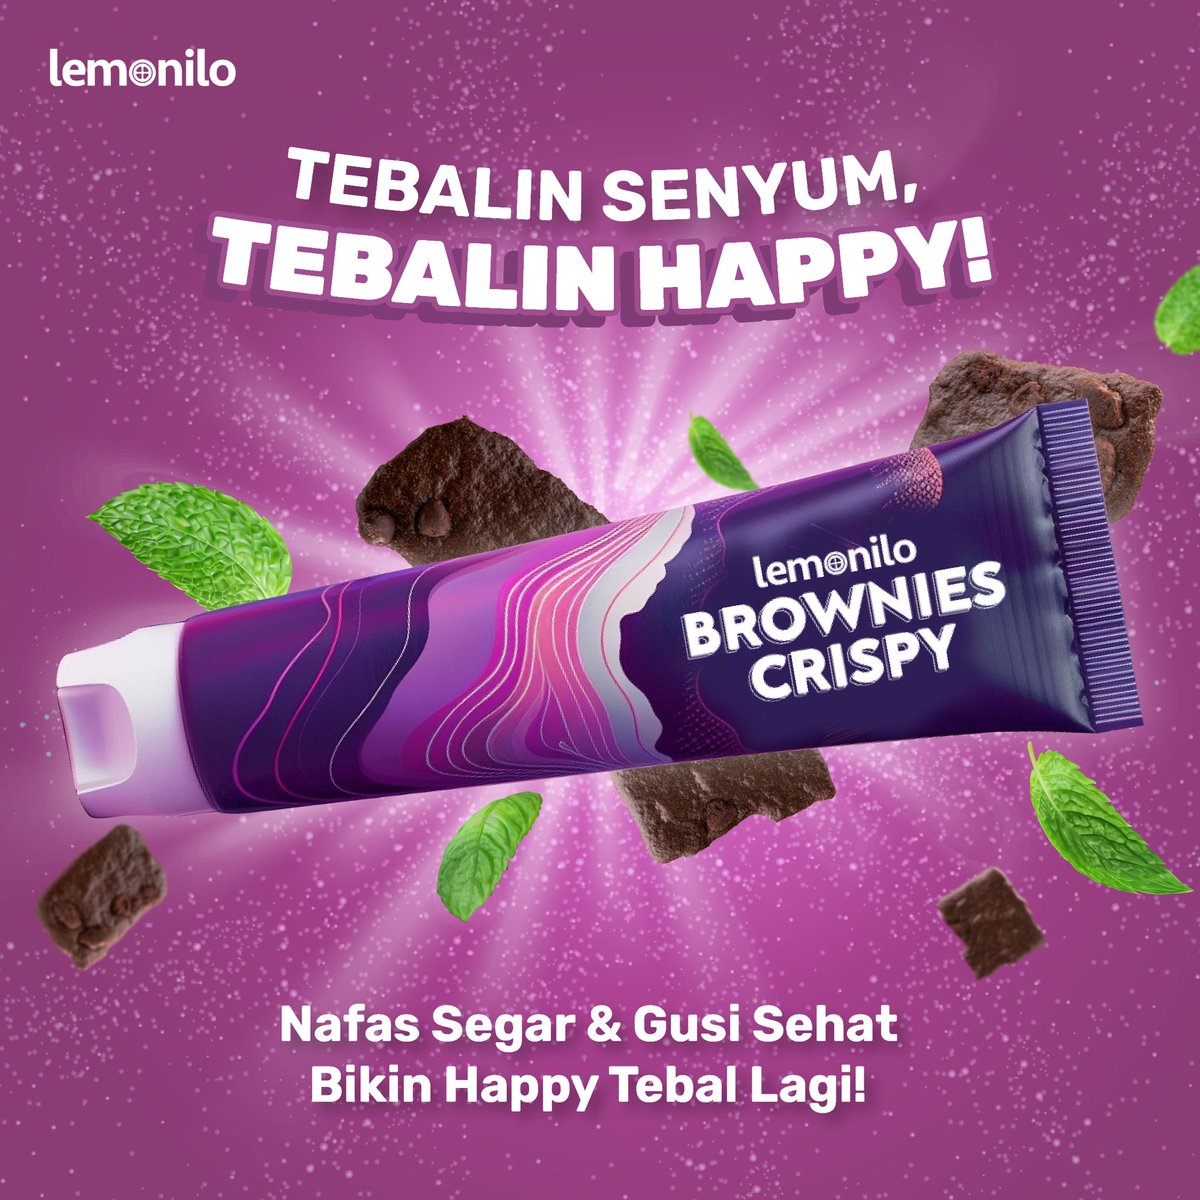 Udah siap tebalin happy dan berani unjuk gigi? BARU! Pasta gigi Brownies Crispy Choco Mint hadir untuk kamu 🍫🍃 Nafas segar & gusi sehat, bikin happy tebal lagi 🌬️ Absen di kolom komentar yang nggak sabar untuk coba! #BrowniesCrispy #PastaGigi #Lemonilo